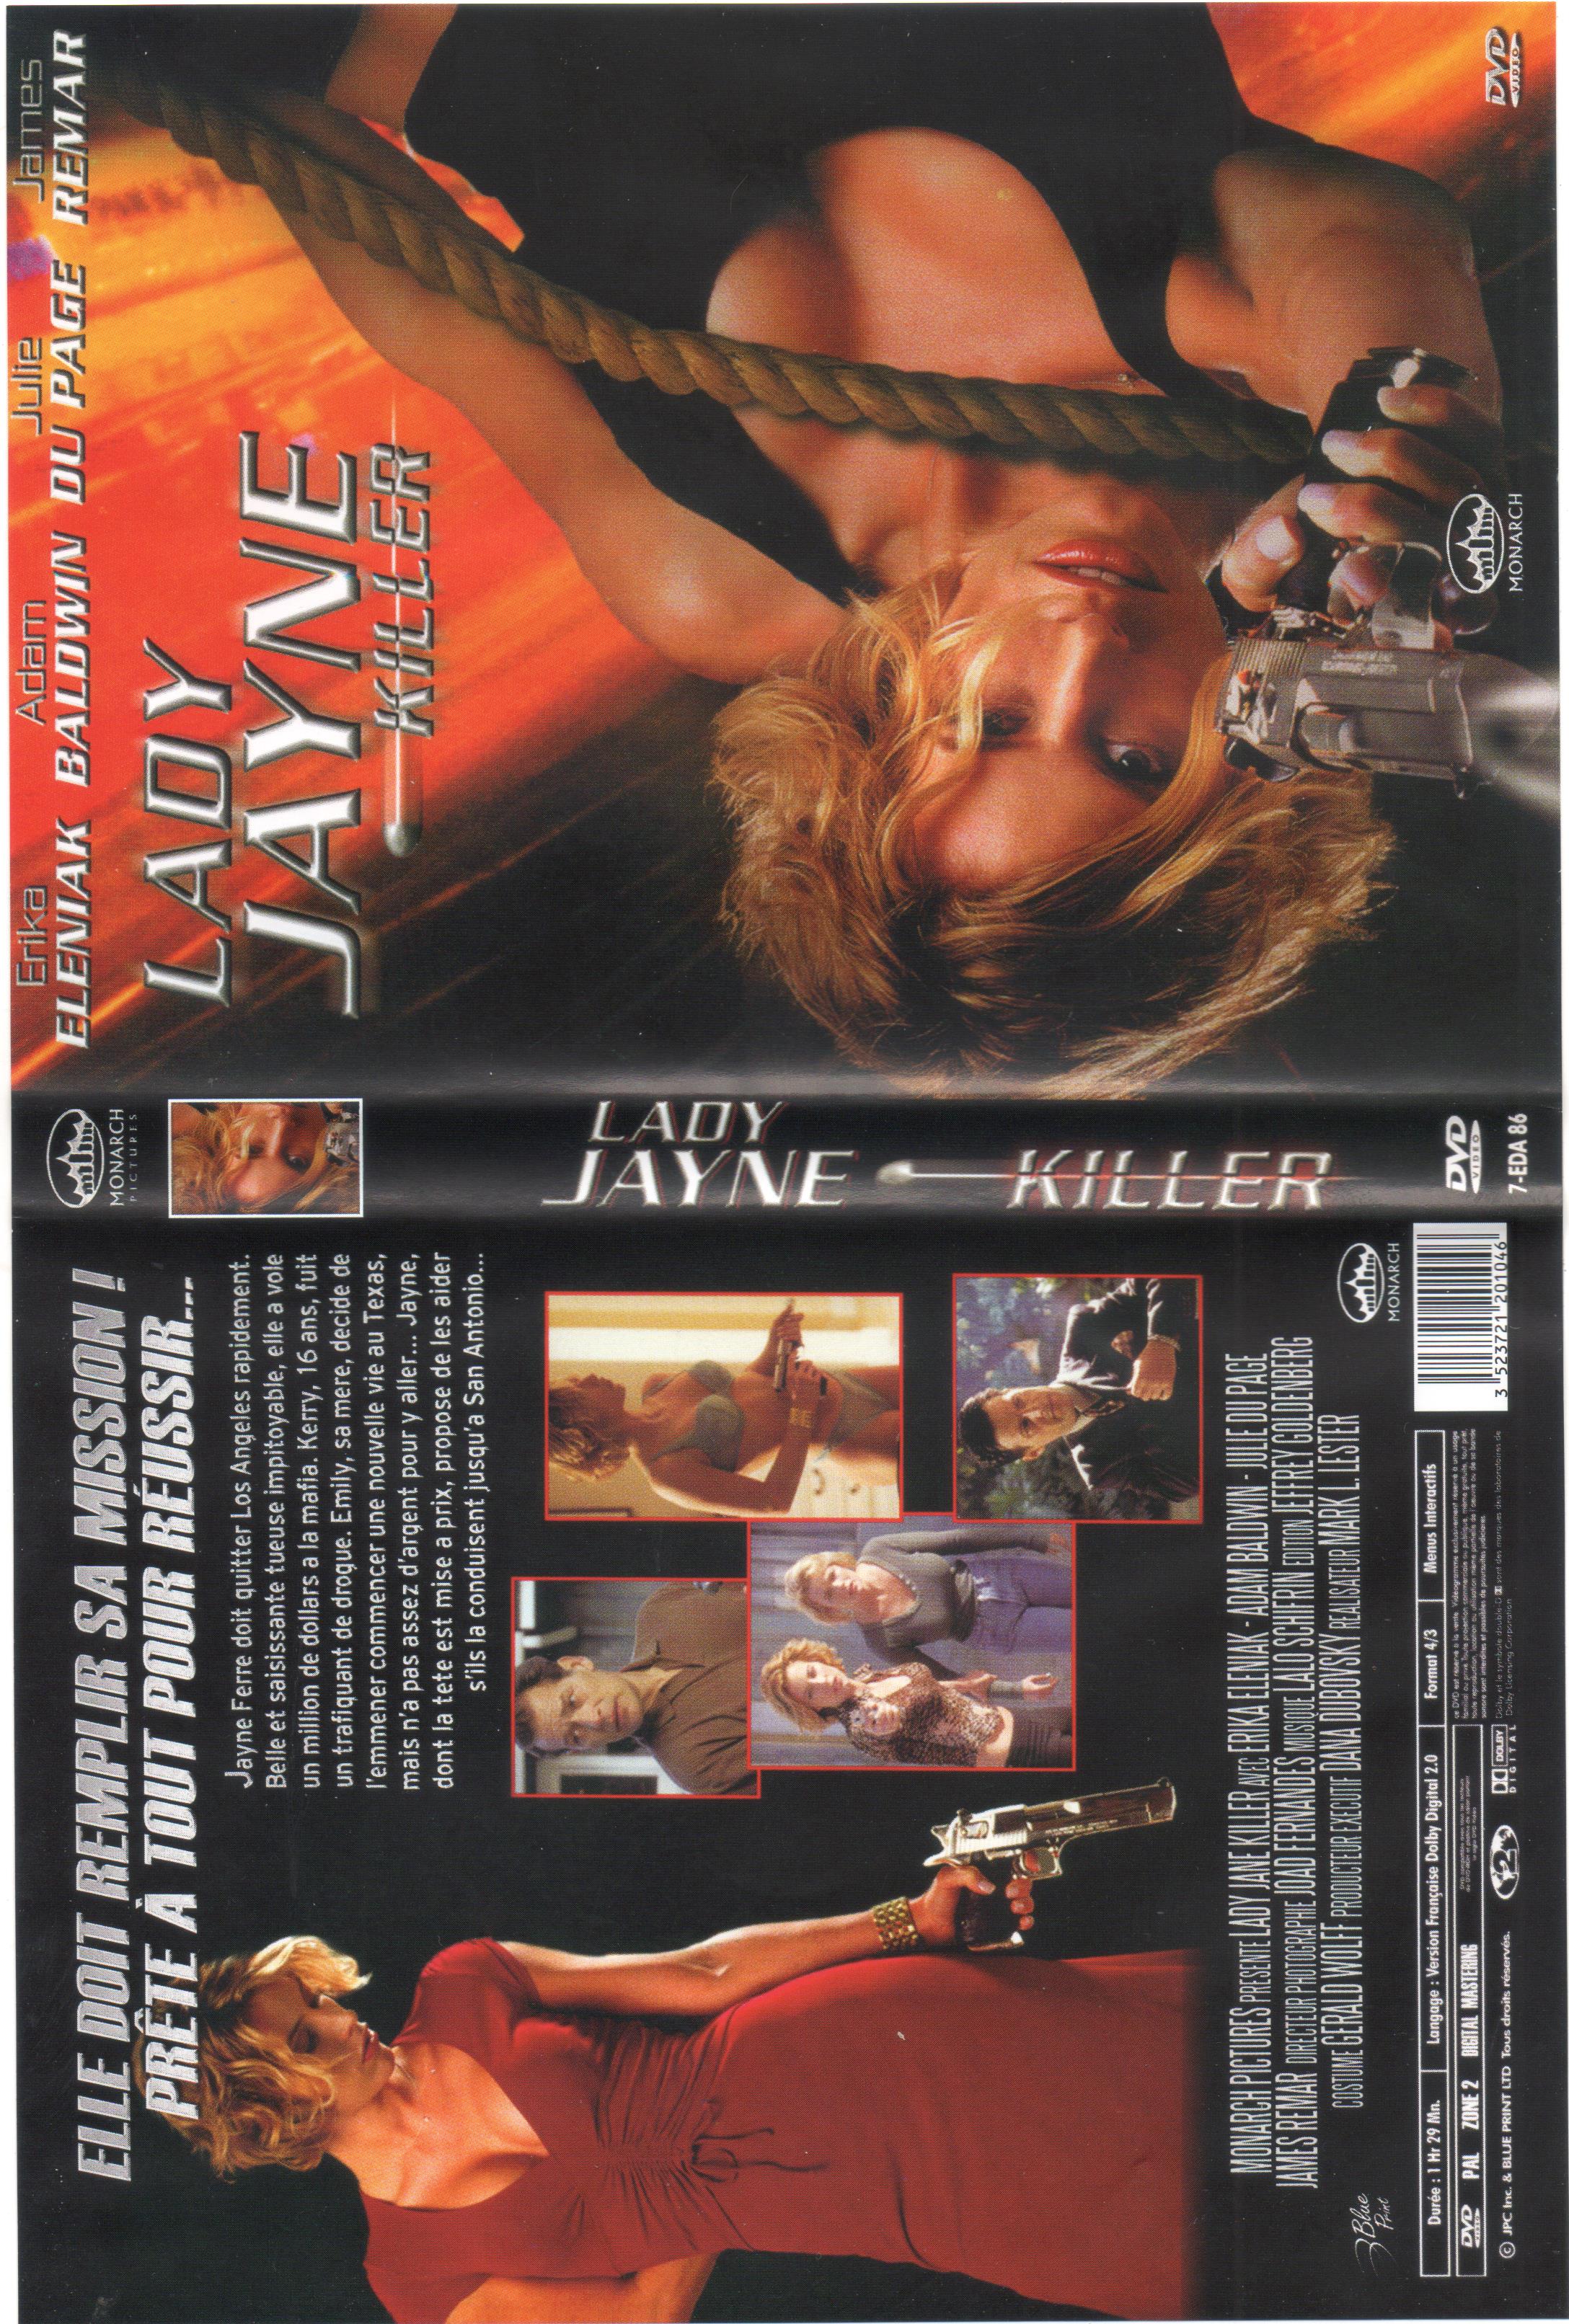 Jaquette DVD Lady jayne killer